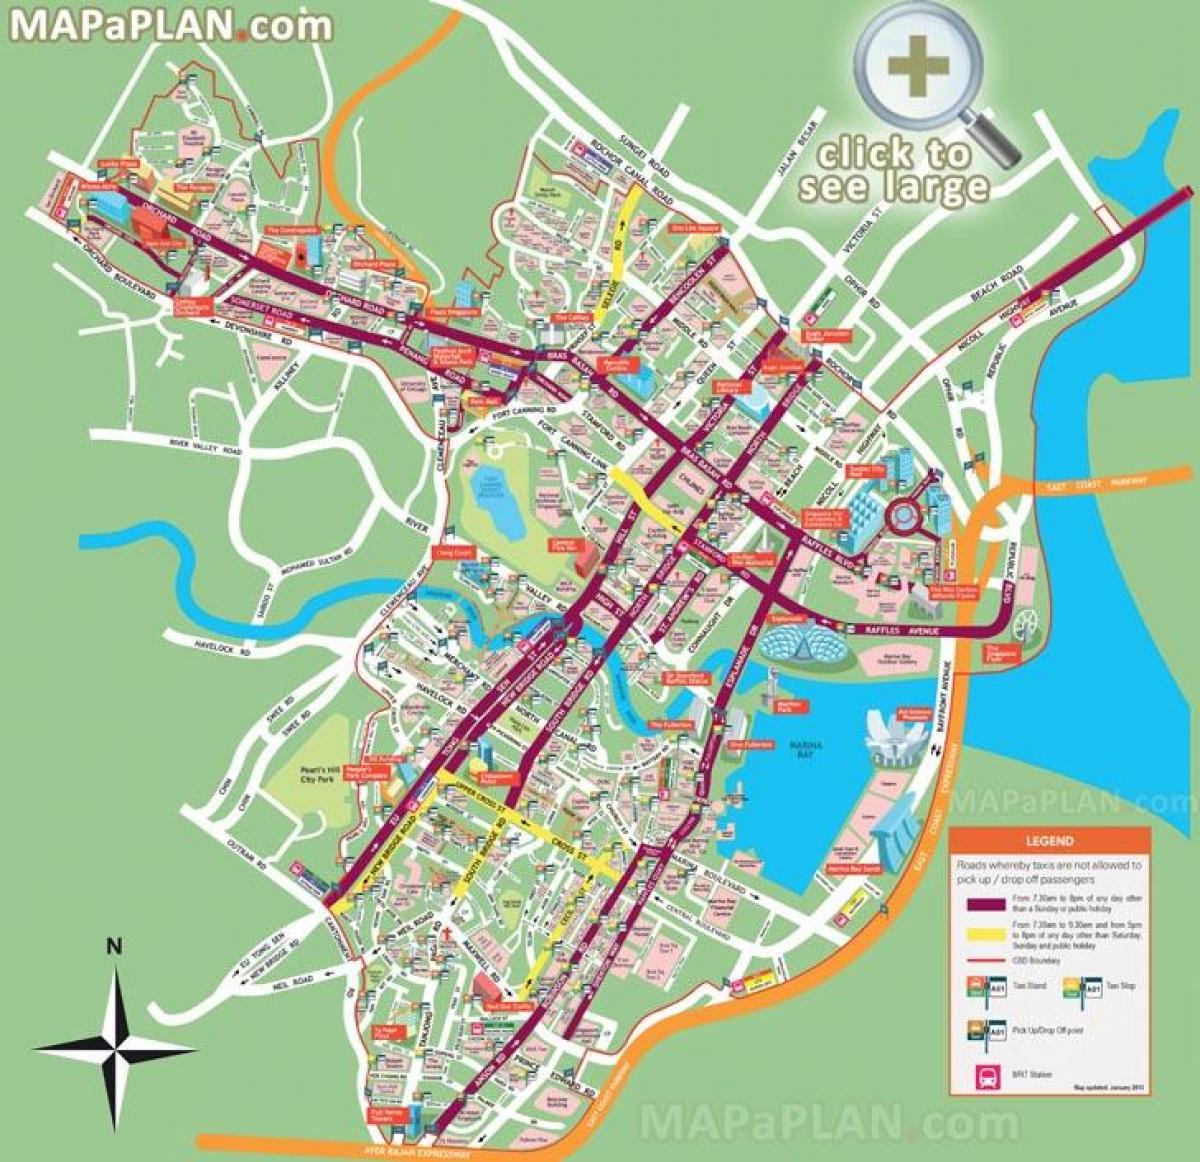 Singapore tourist spots map